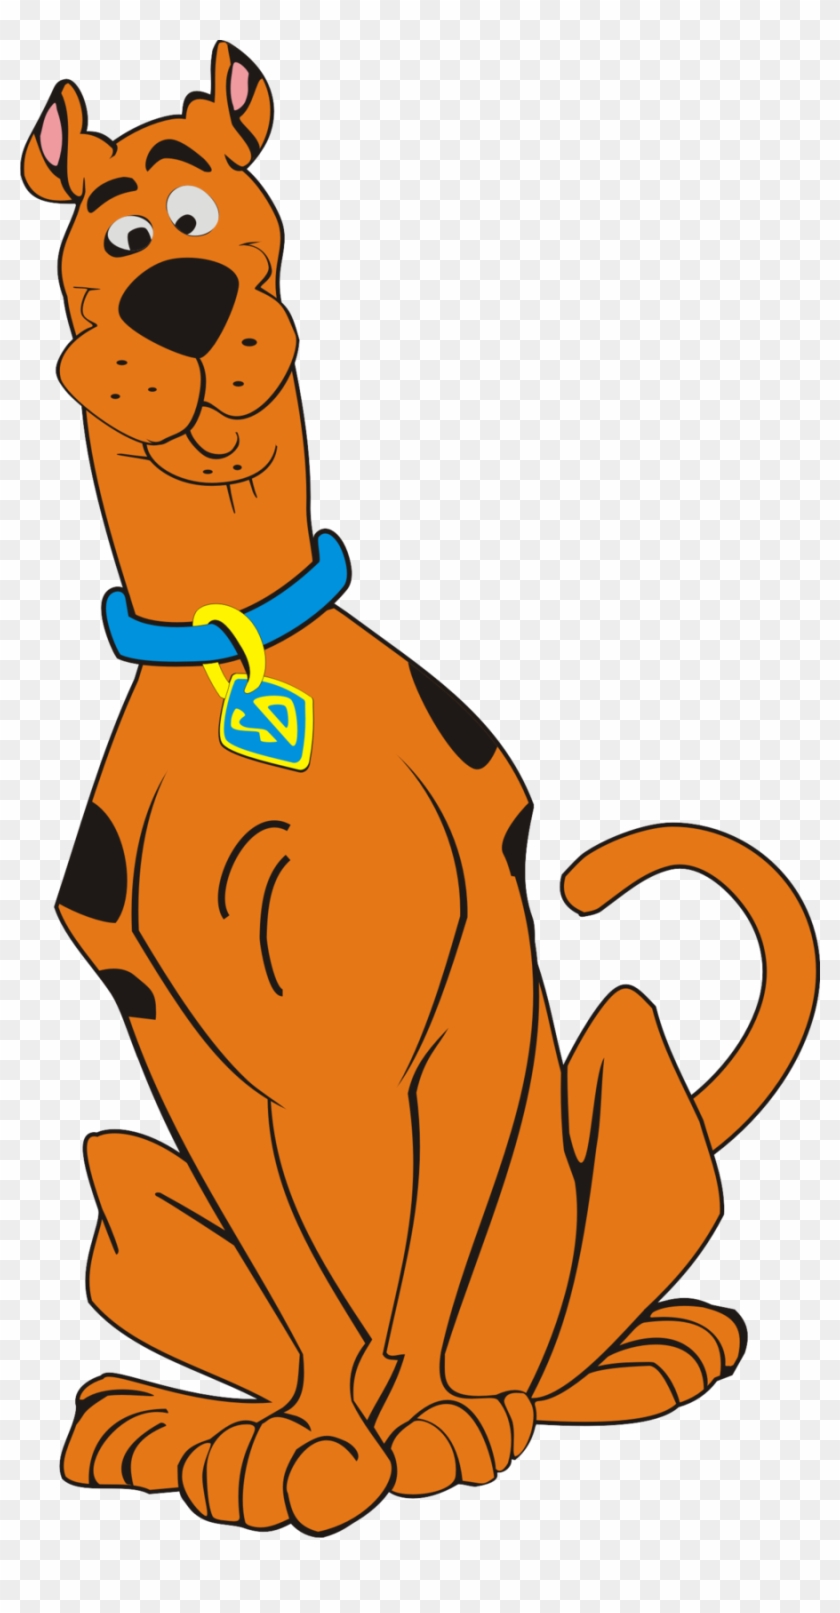 Sweet Image Of Scooby Doo - Scooby Doo Be Doo Png #367843